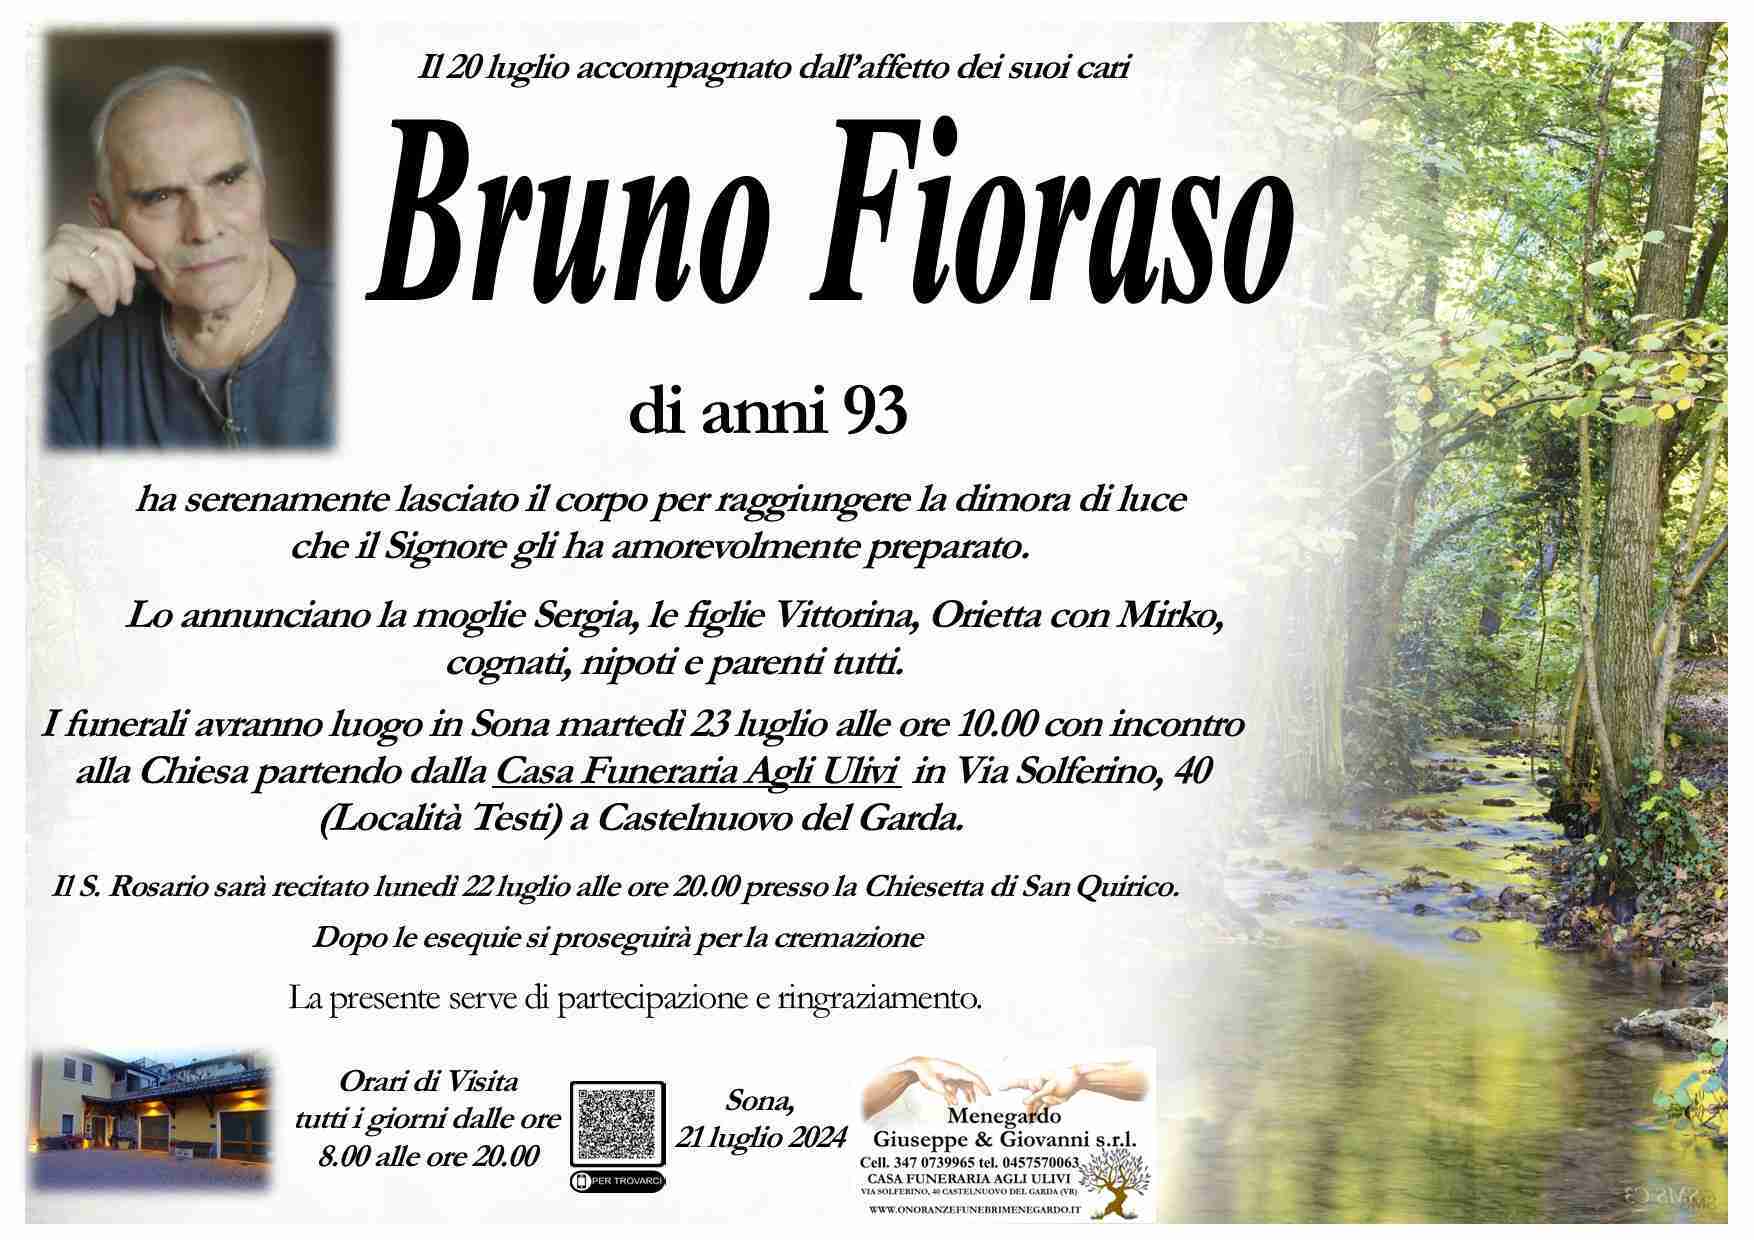 Bruno Fioraso